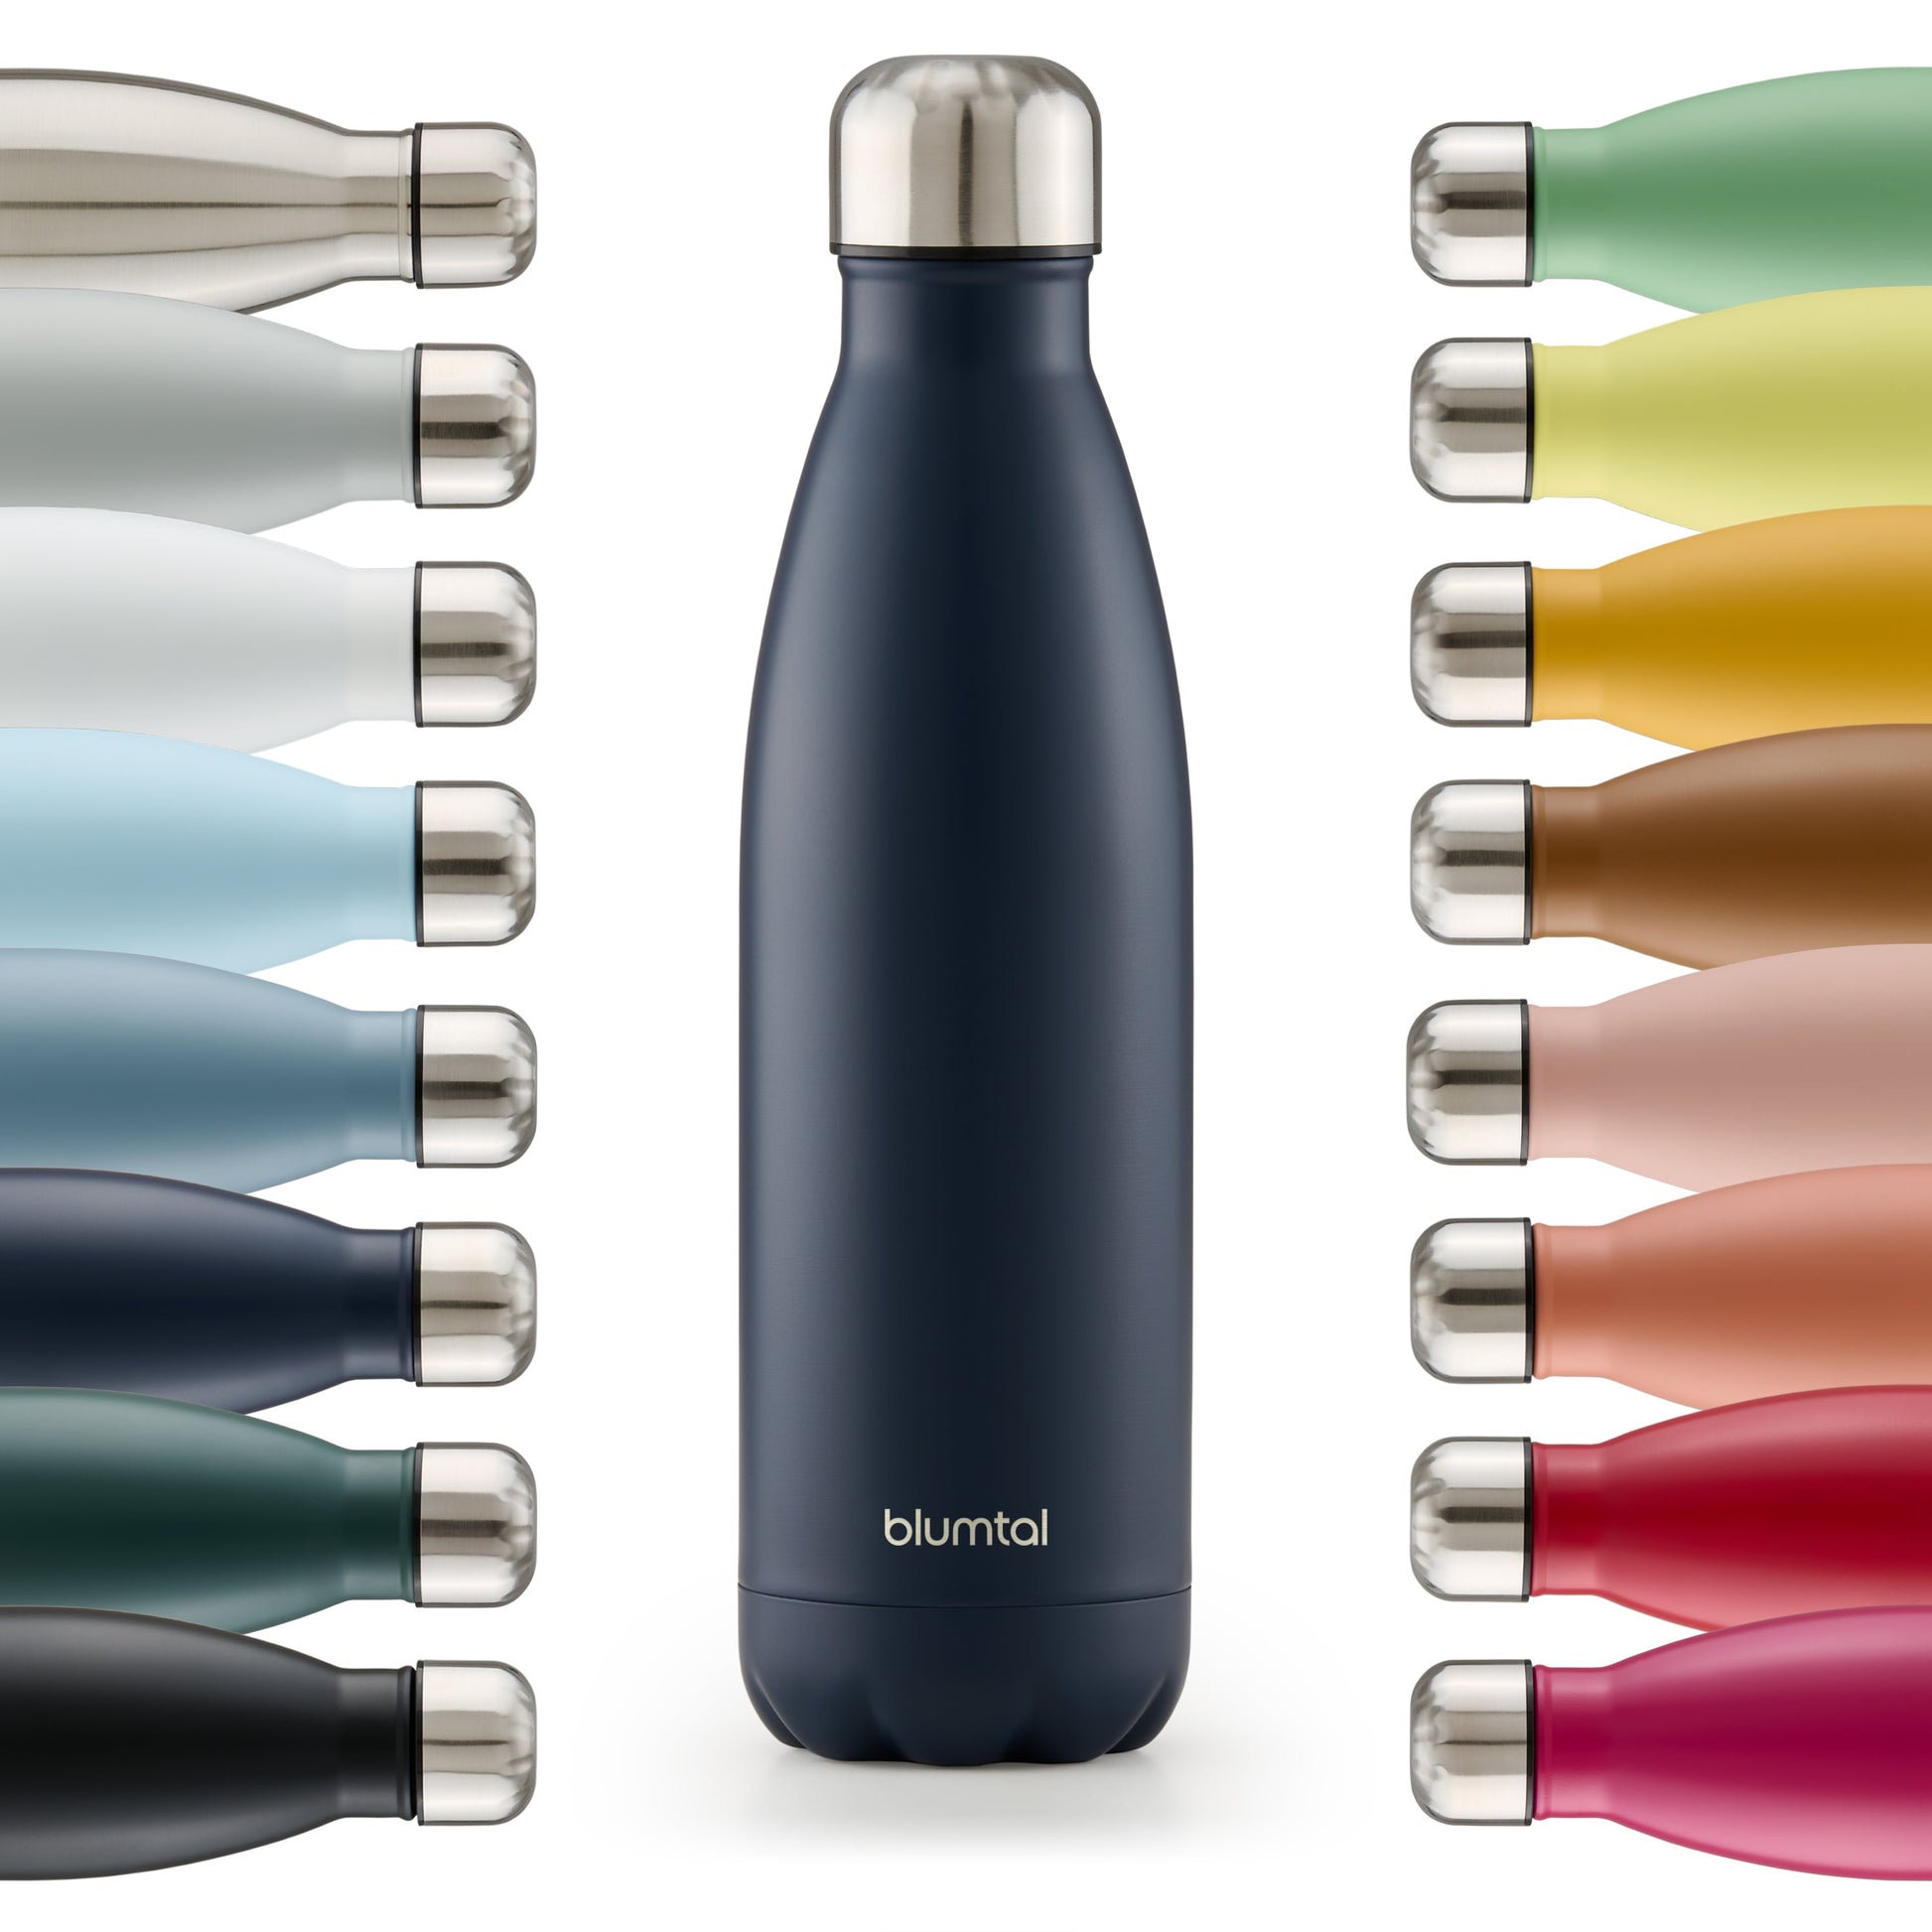 Farbige Auswahl an isolierten Edelstahl-Trinkflaschen von blumtal in einer Reihe angeordnet mit Fokus auf eine vorderseitige dark ocean blau farbene Flasche.